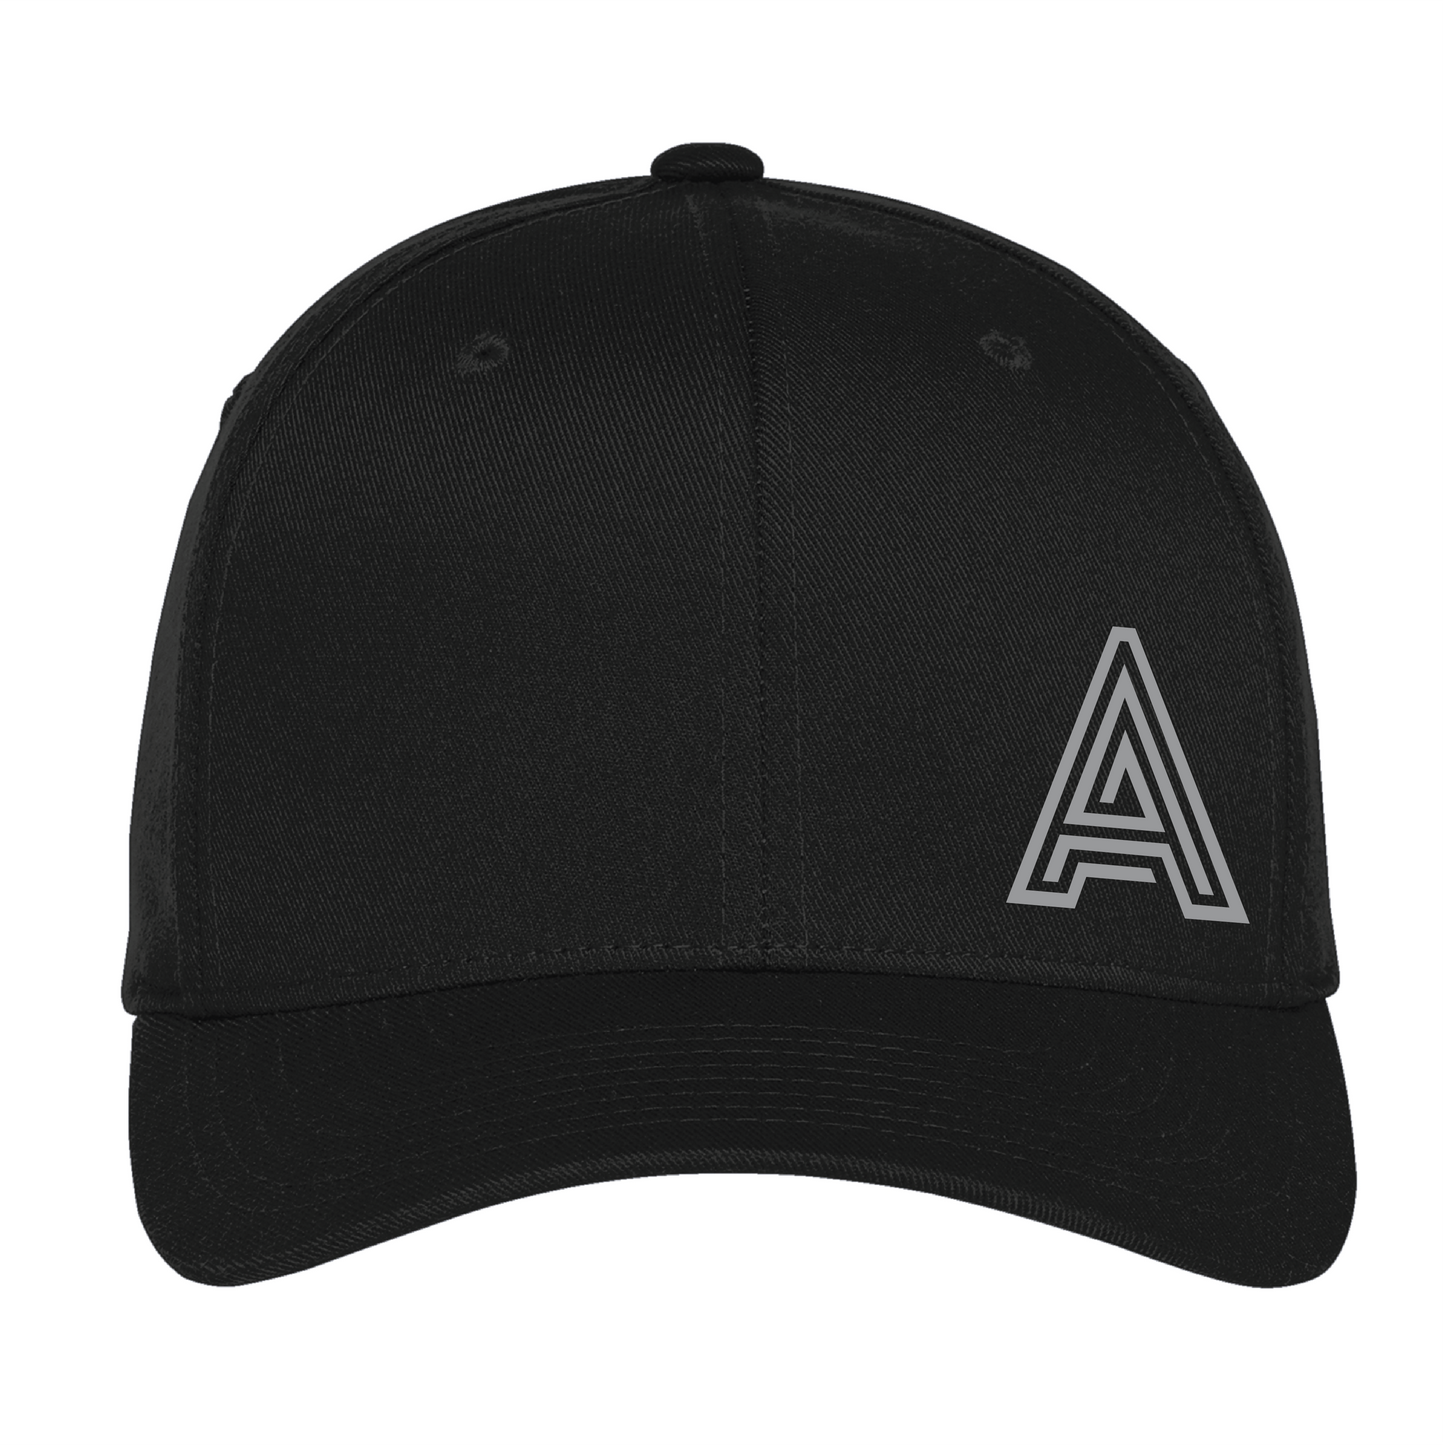 Avants Flexfit Hat